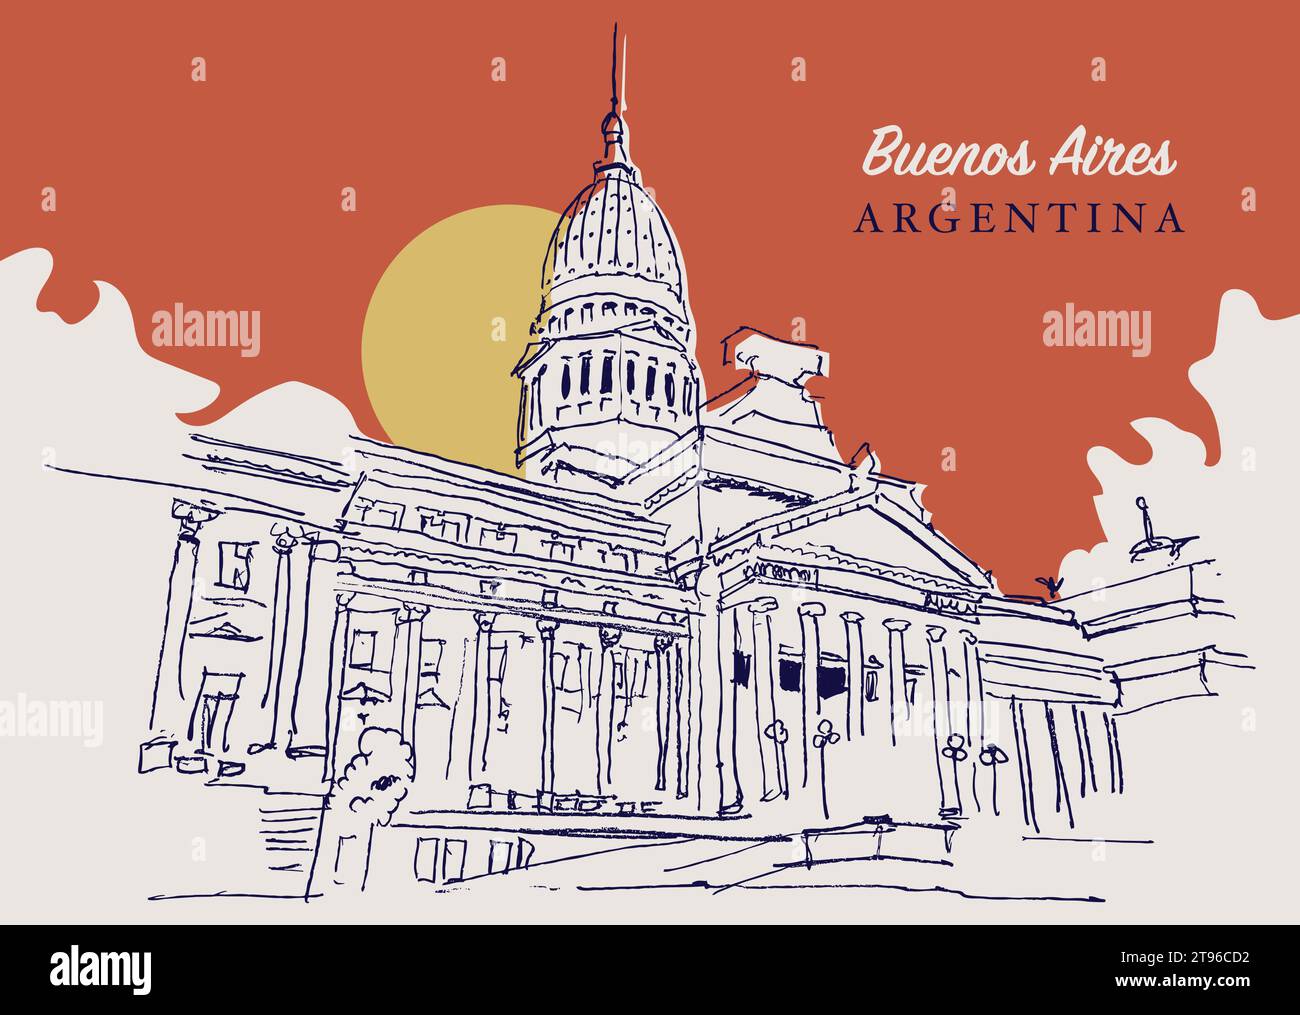 Disegno vettoriale disegnato a mano della camera dei rappresentanti dell'Argentina a Buenos Aires. Illustrazione Vettoriale